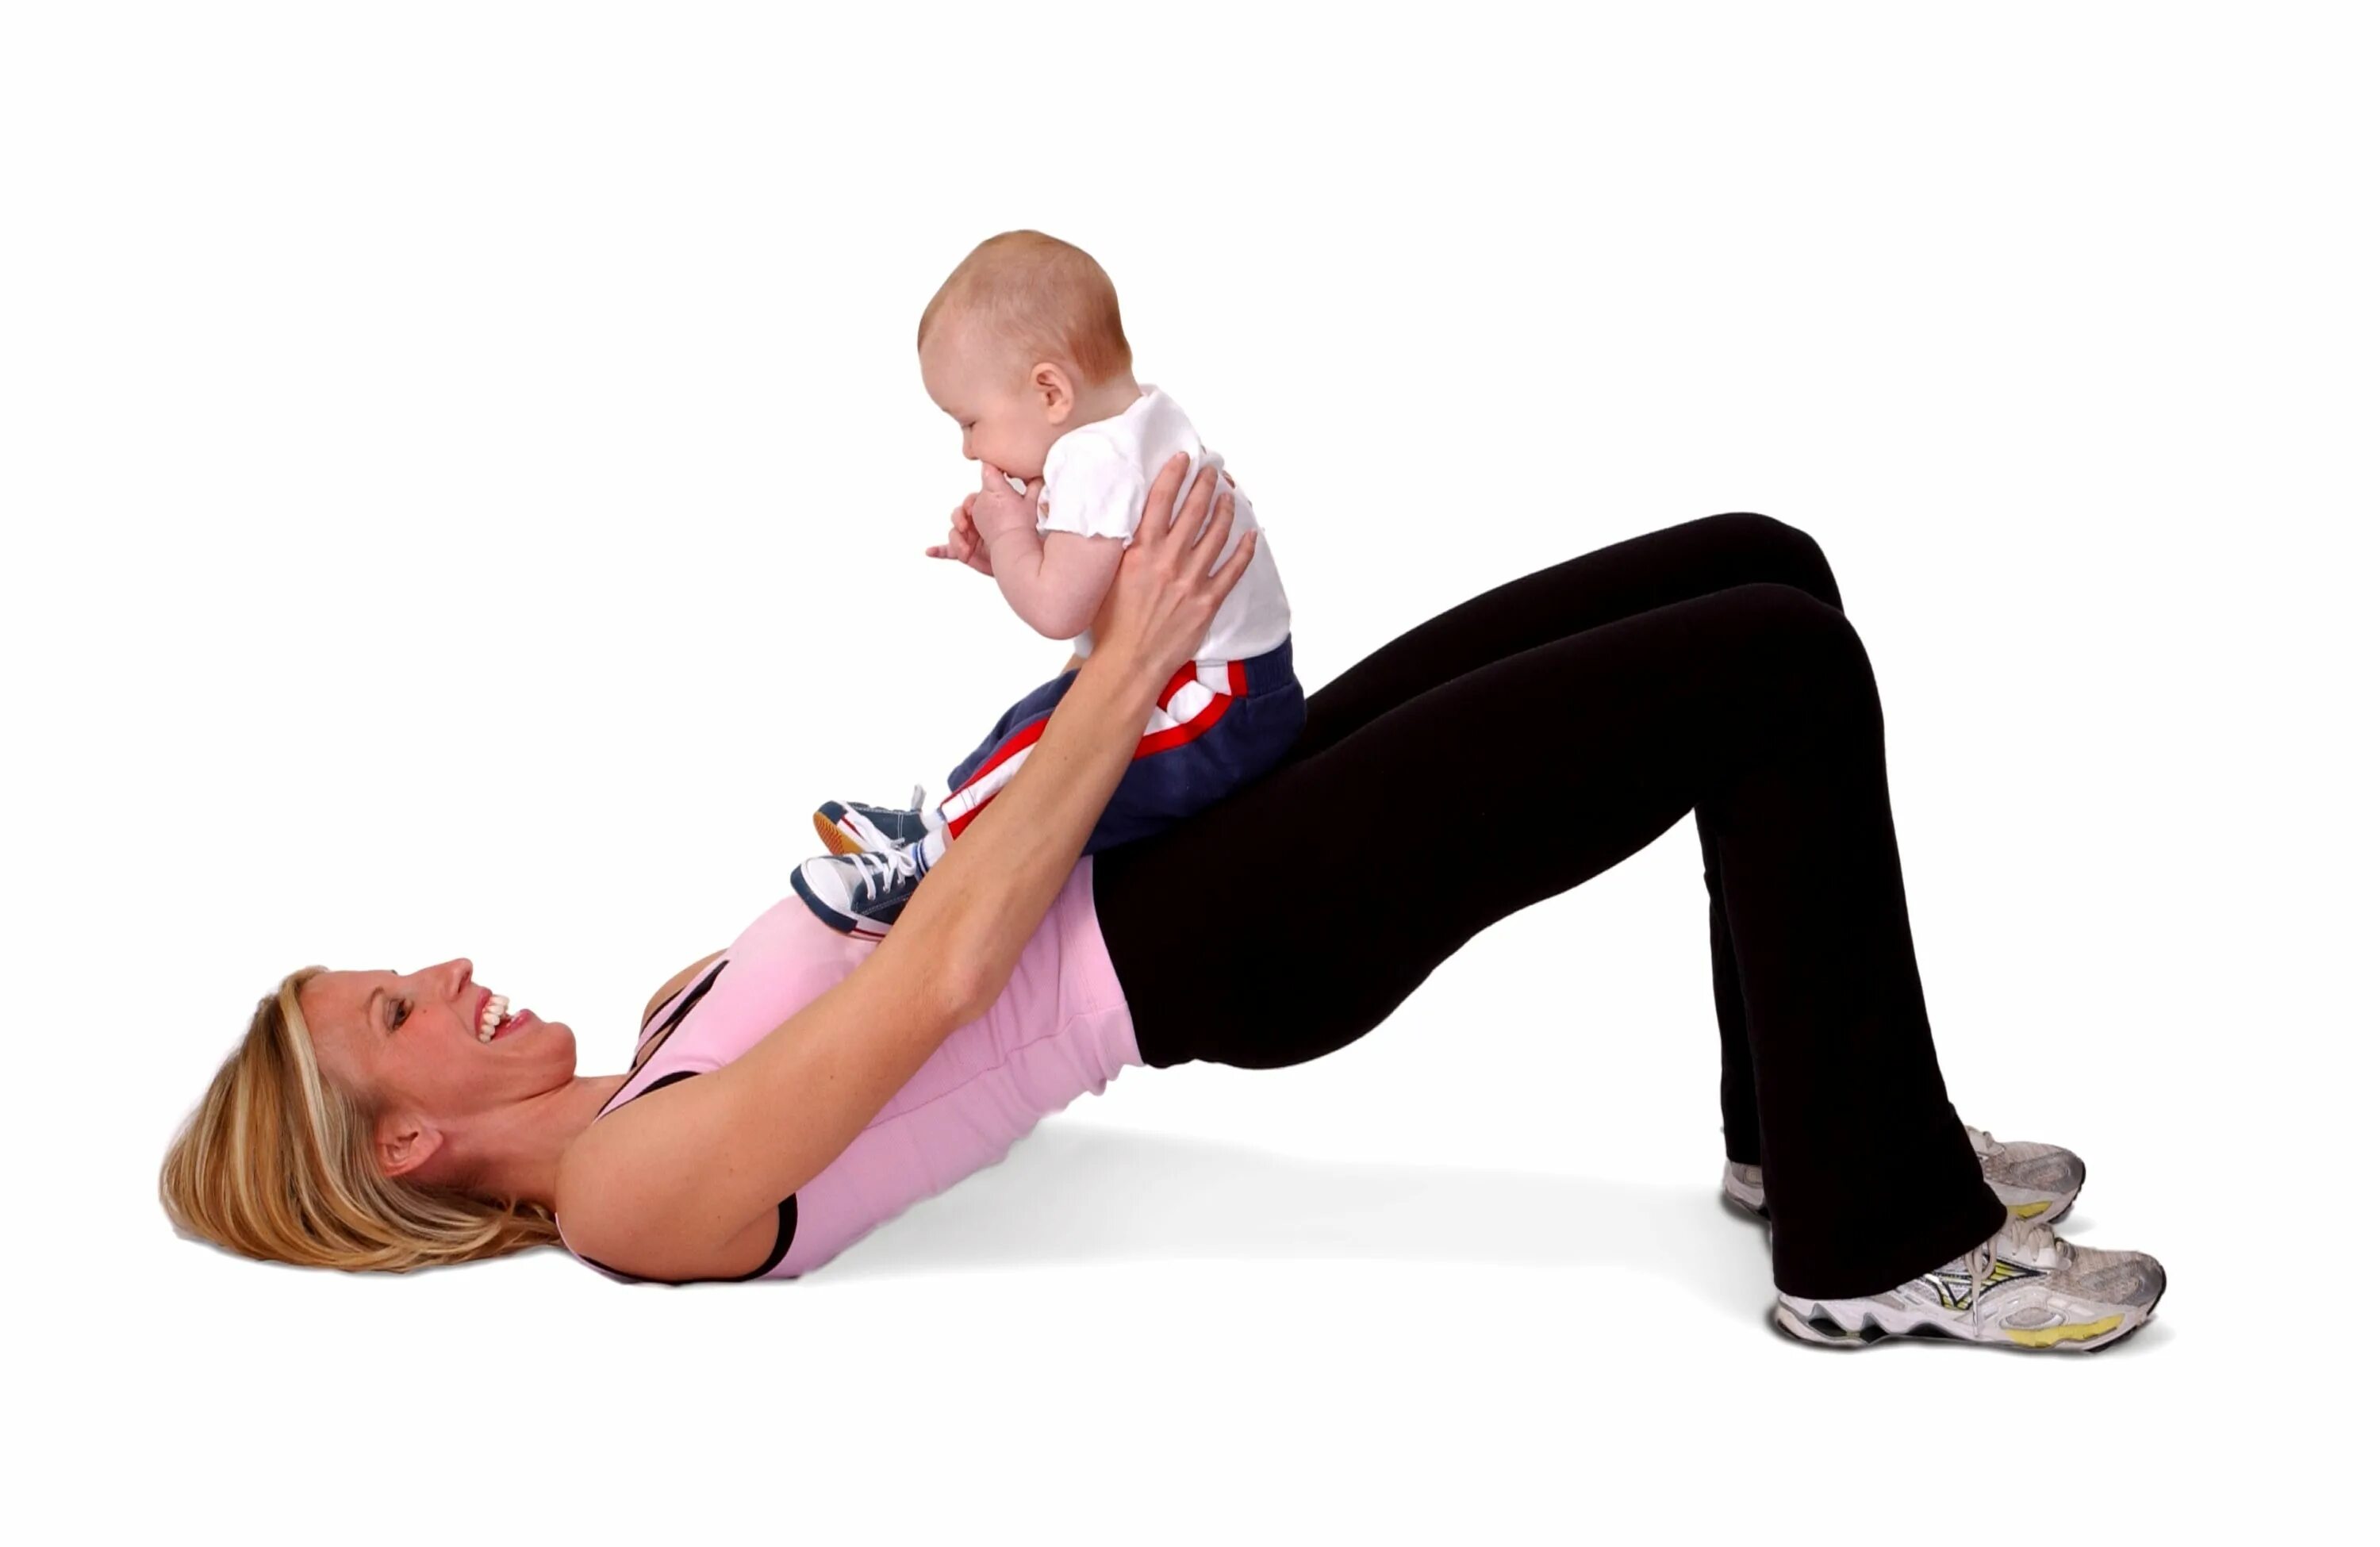 Спорт после беременности. Упражнения с ребенком на руках для похудения. Фитнес с ребенком на руках. Упражнения для похудения с малышом. Фитнес с малышом на руках упражнения.